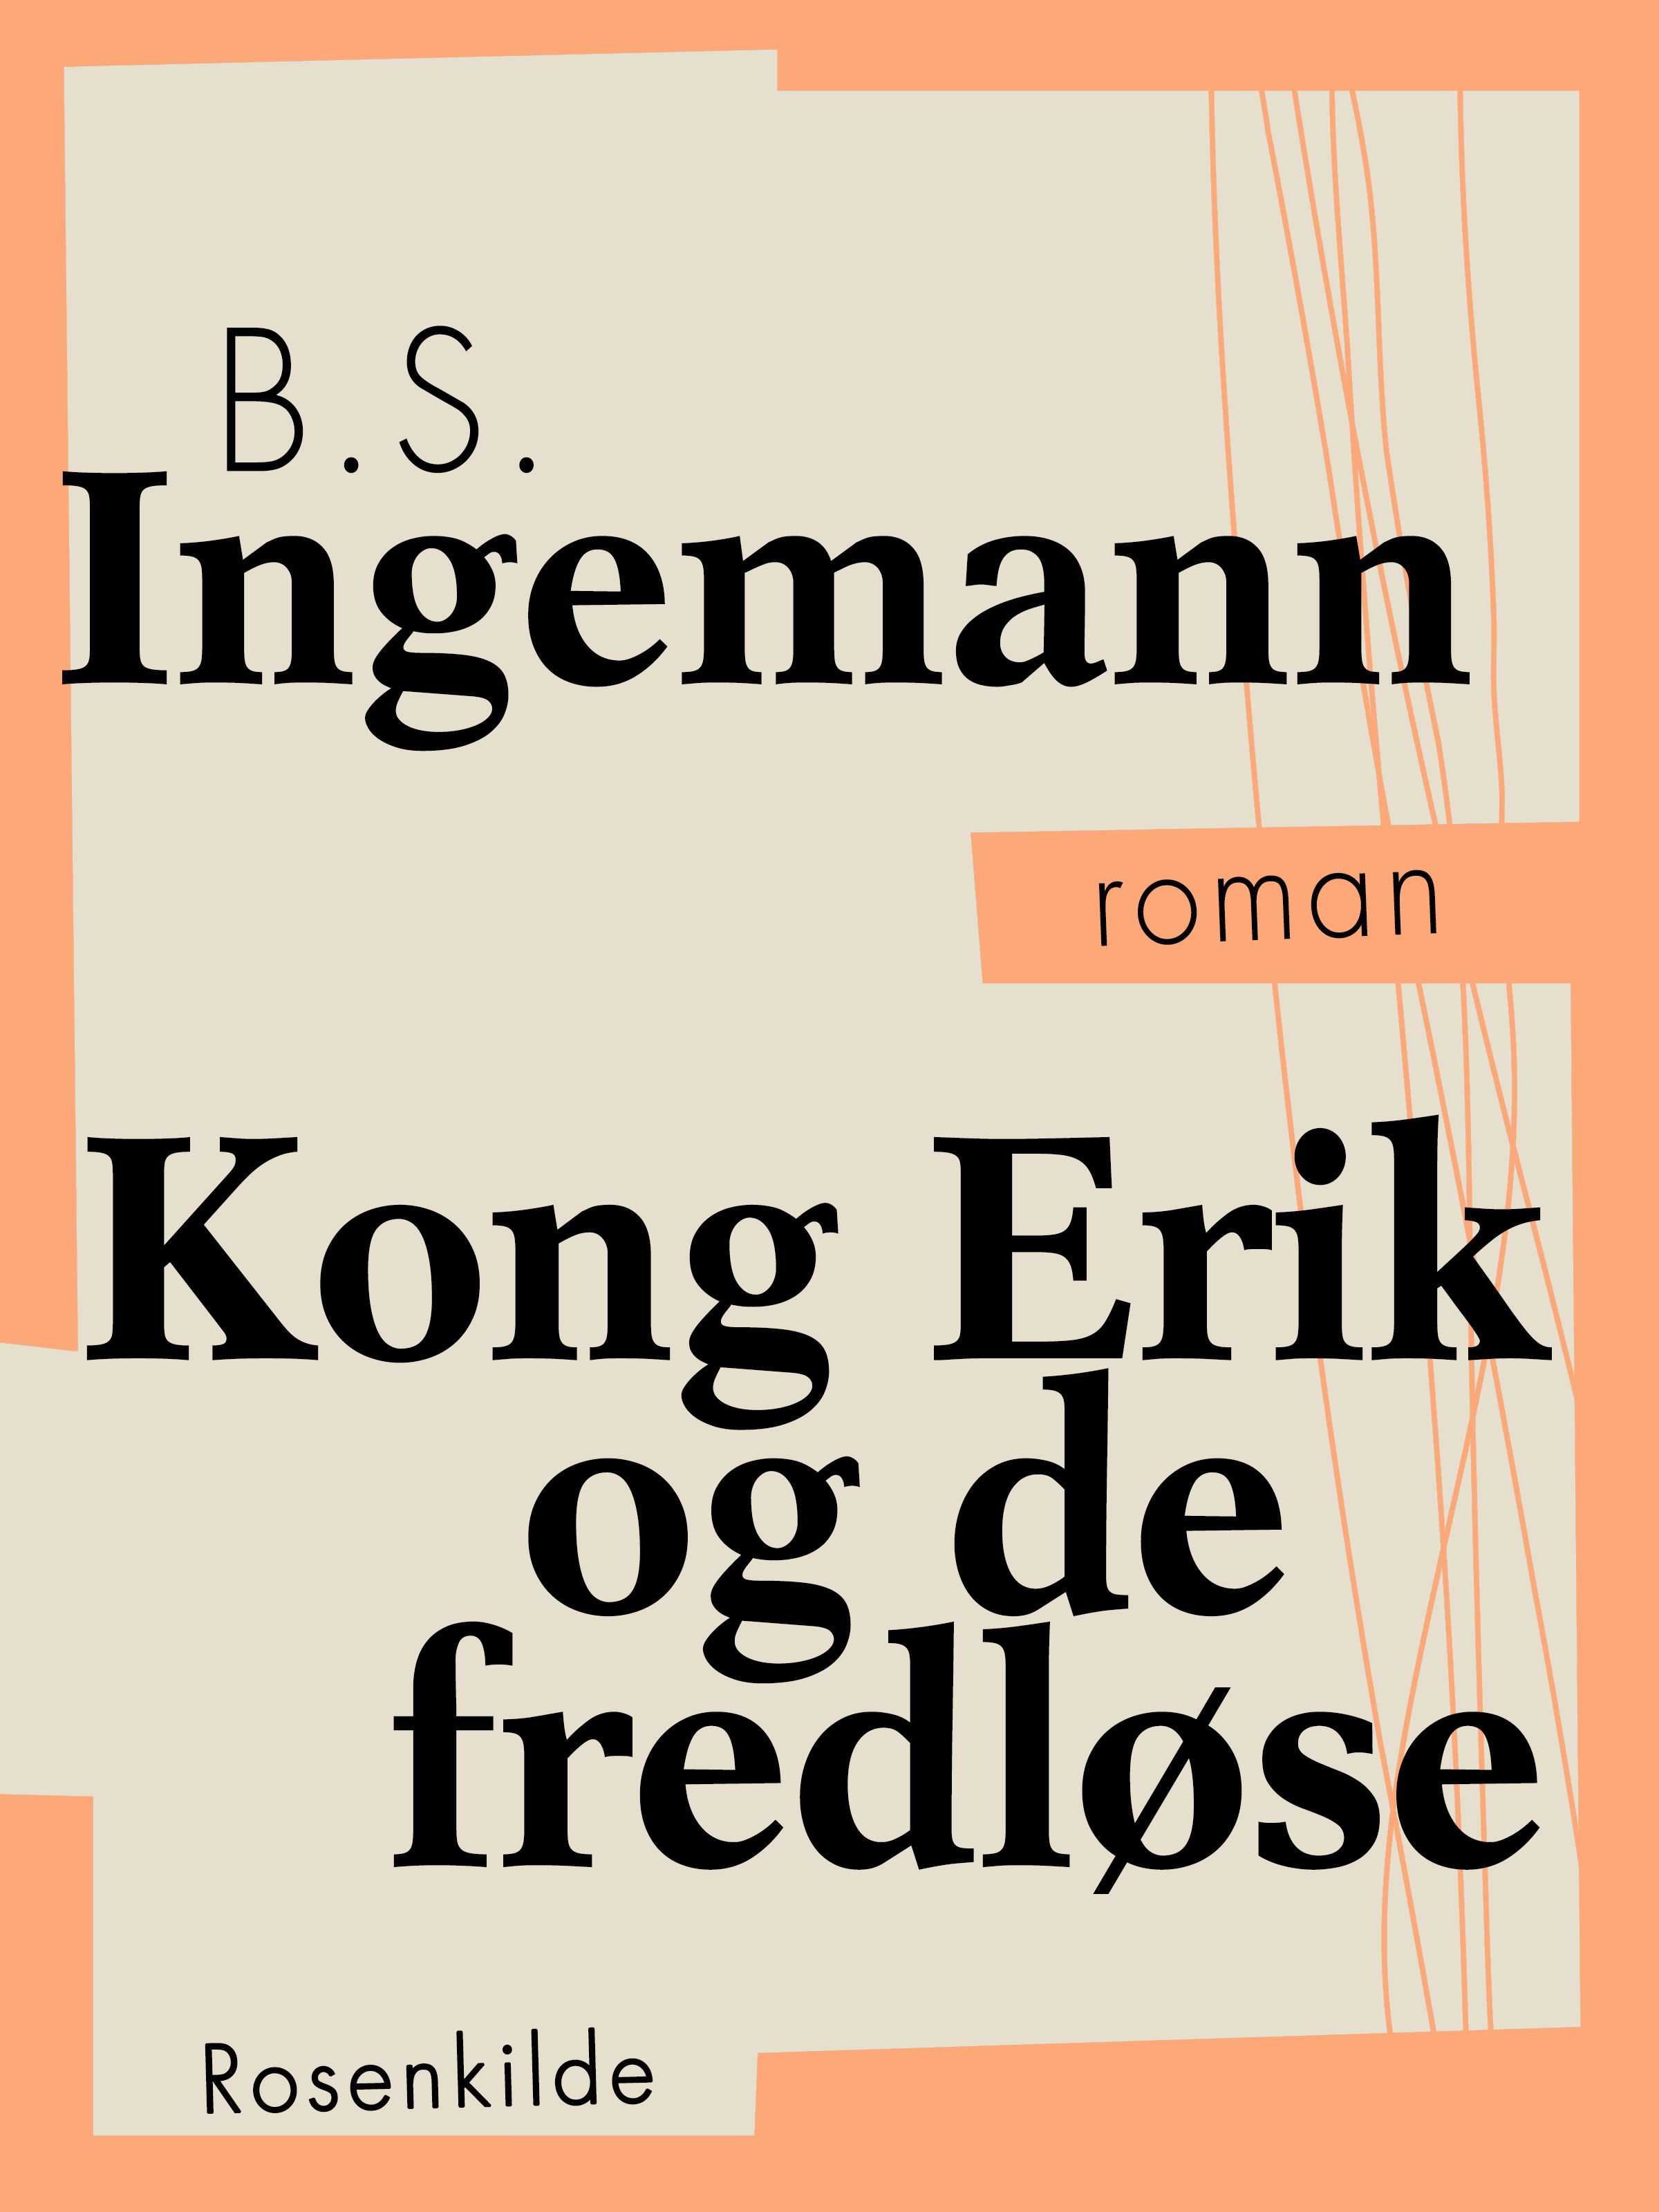 Kong Erik og de fredløse, ljudbok av B.S. Ingemann